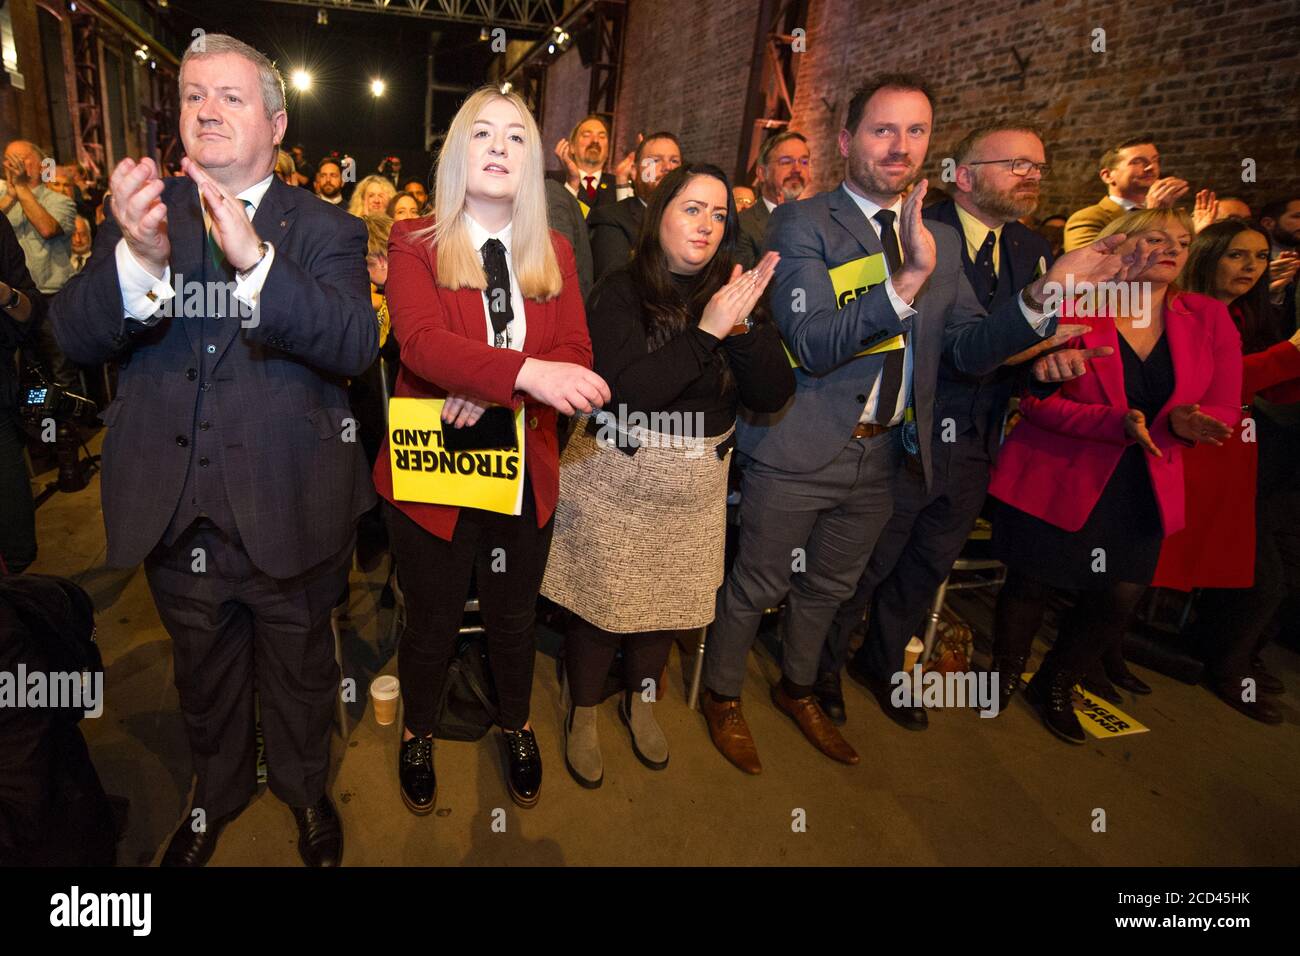 Glasgow, Schottland, Großbritannien. 27. November 2019. Bild: (Links) Ian Blackford MP; (2. Links) Amy Callaghan MP. Die offizielle Wahlerklärung der Scottish National Party (SNP) für die Parlamentswahlen am 12. Dezember 2019. Stockfoto